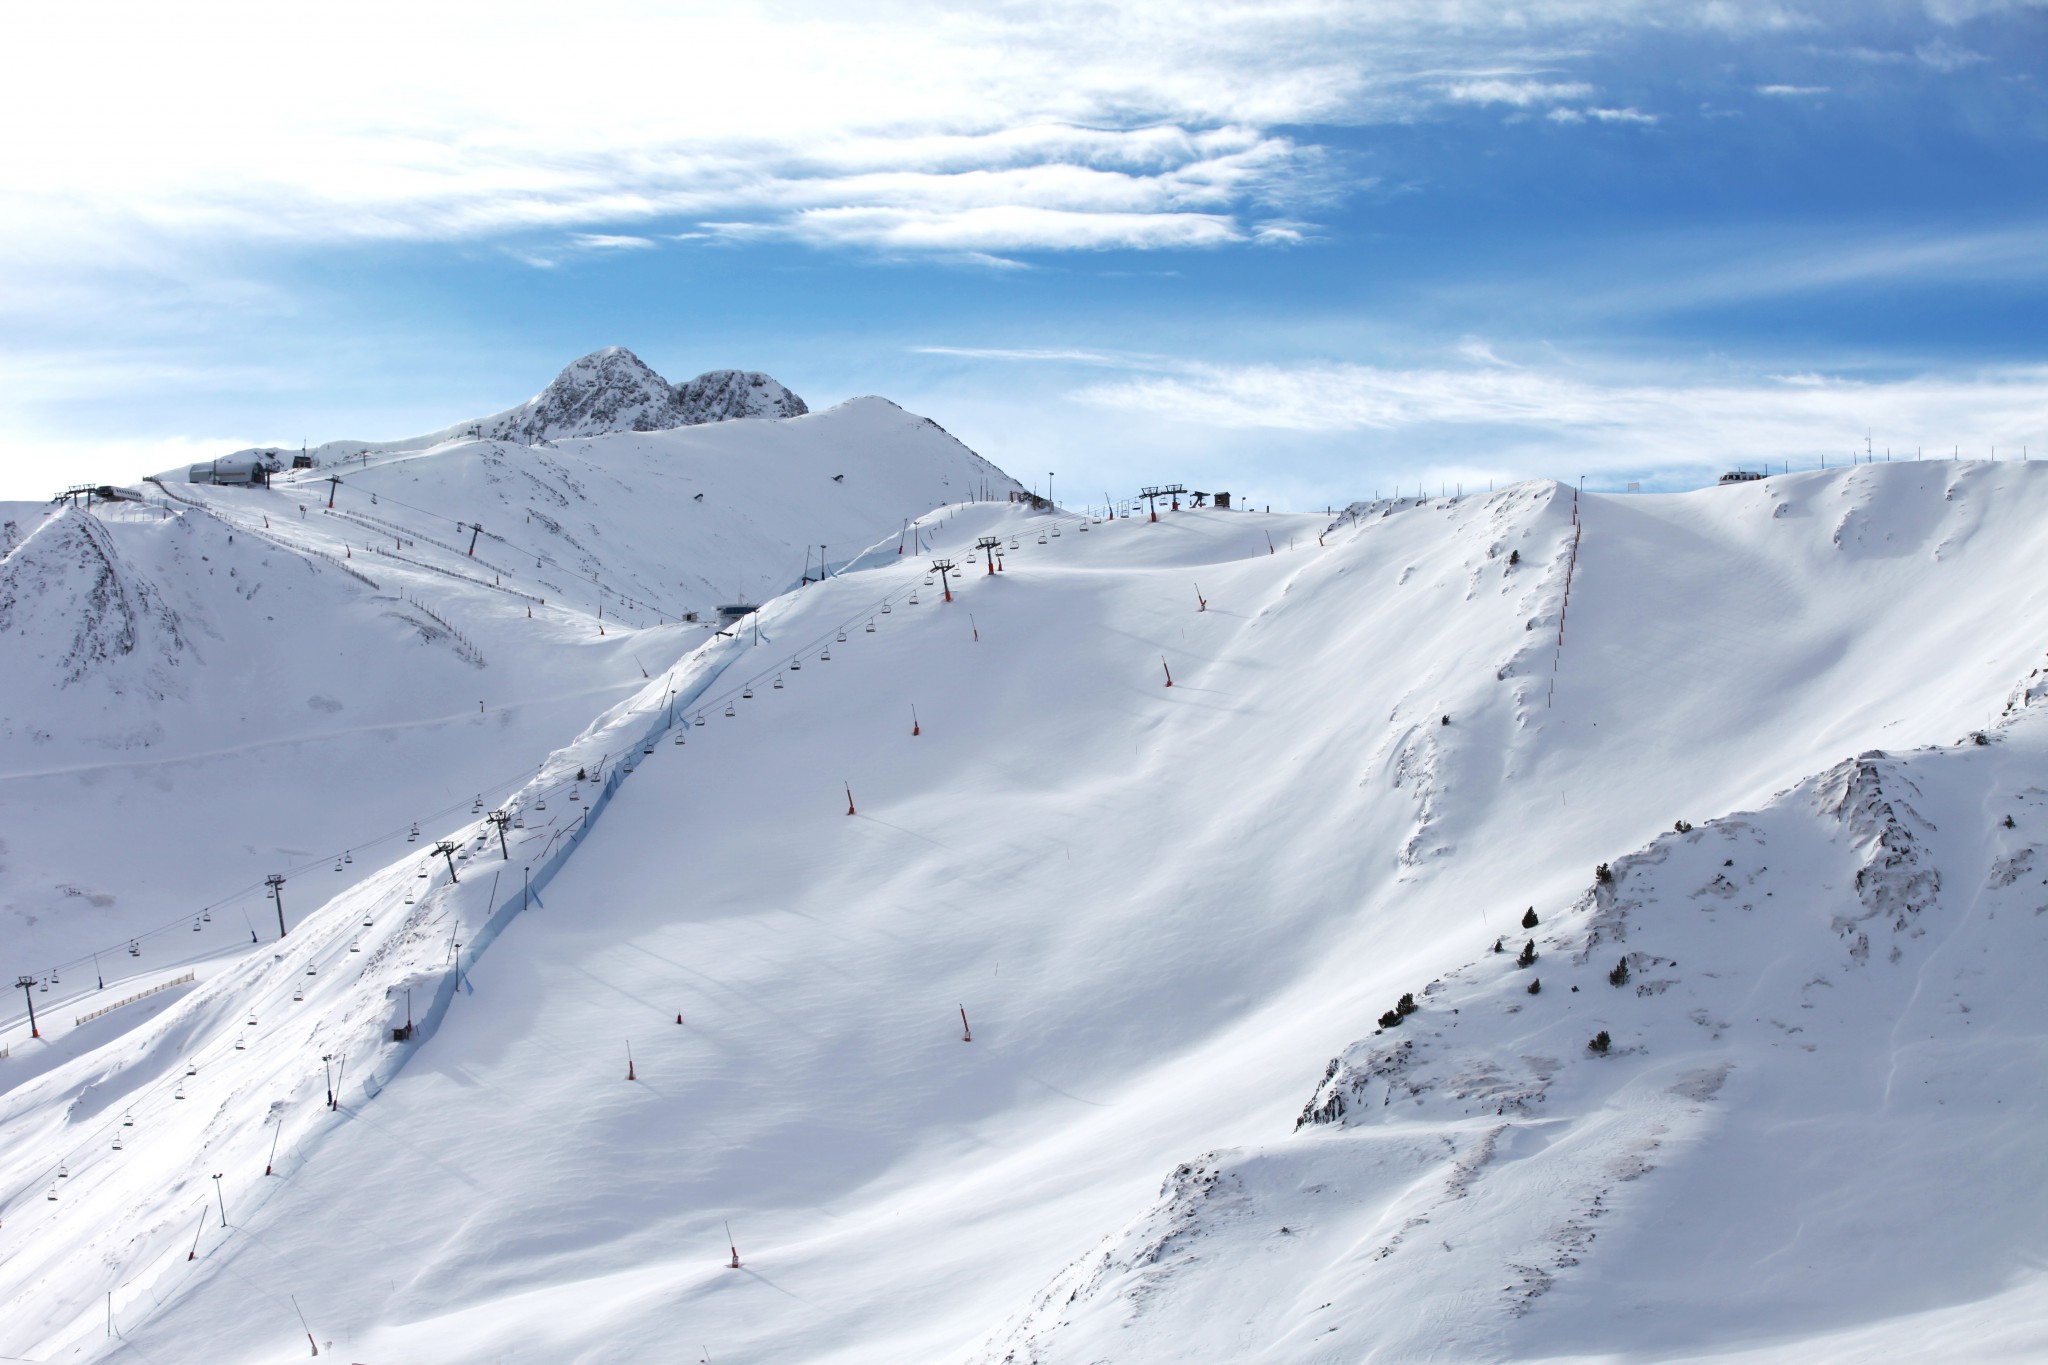 Humedal Se convierte en estático VIAJES DE ESQUÍ A GRAND VALIRA | Ofertas de viajes de esquí a Andorra